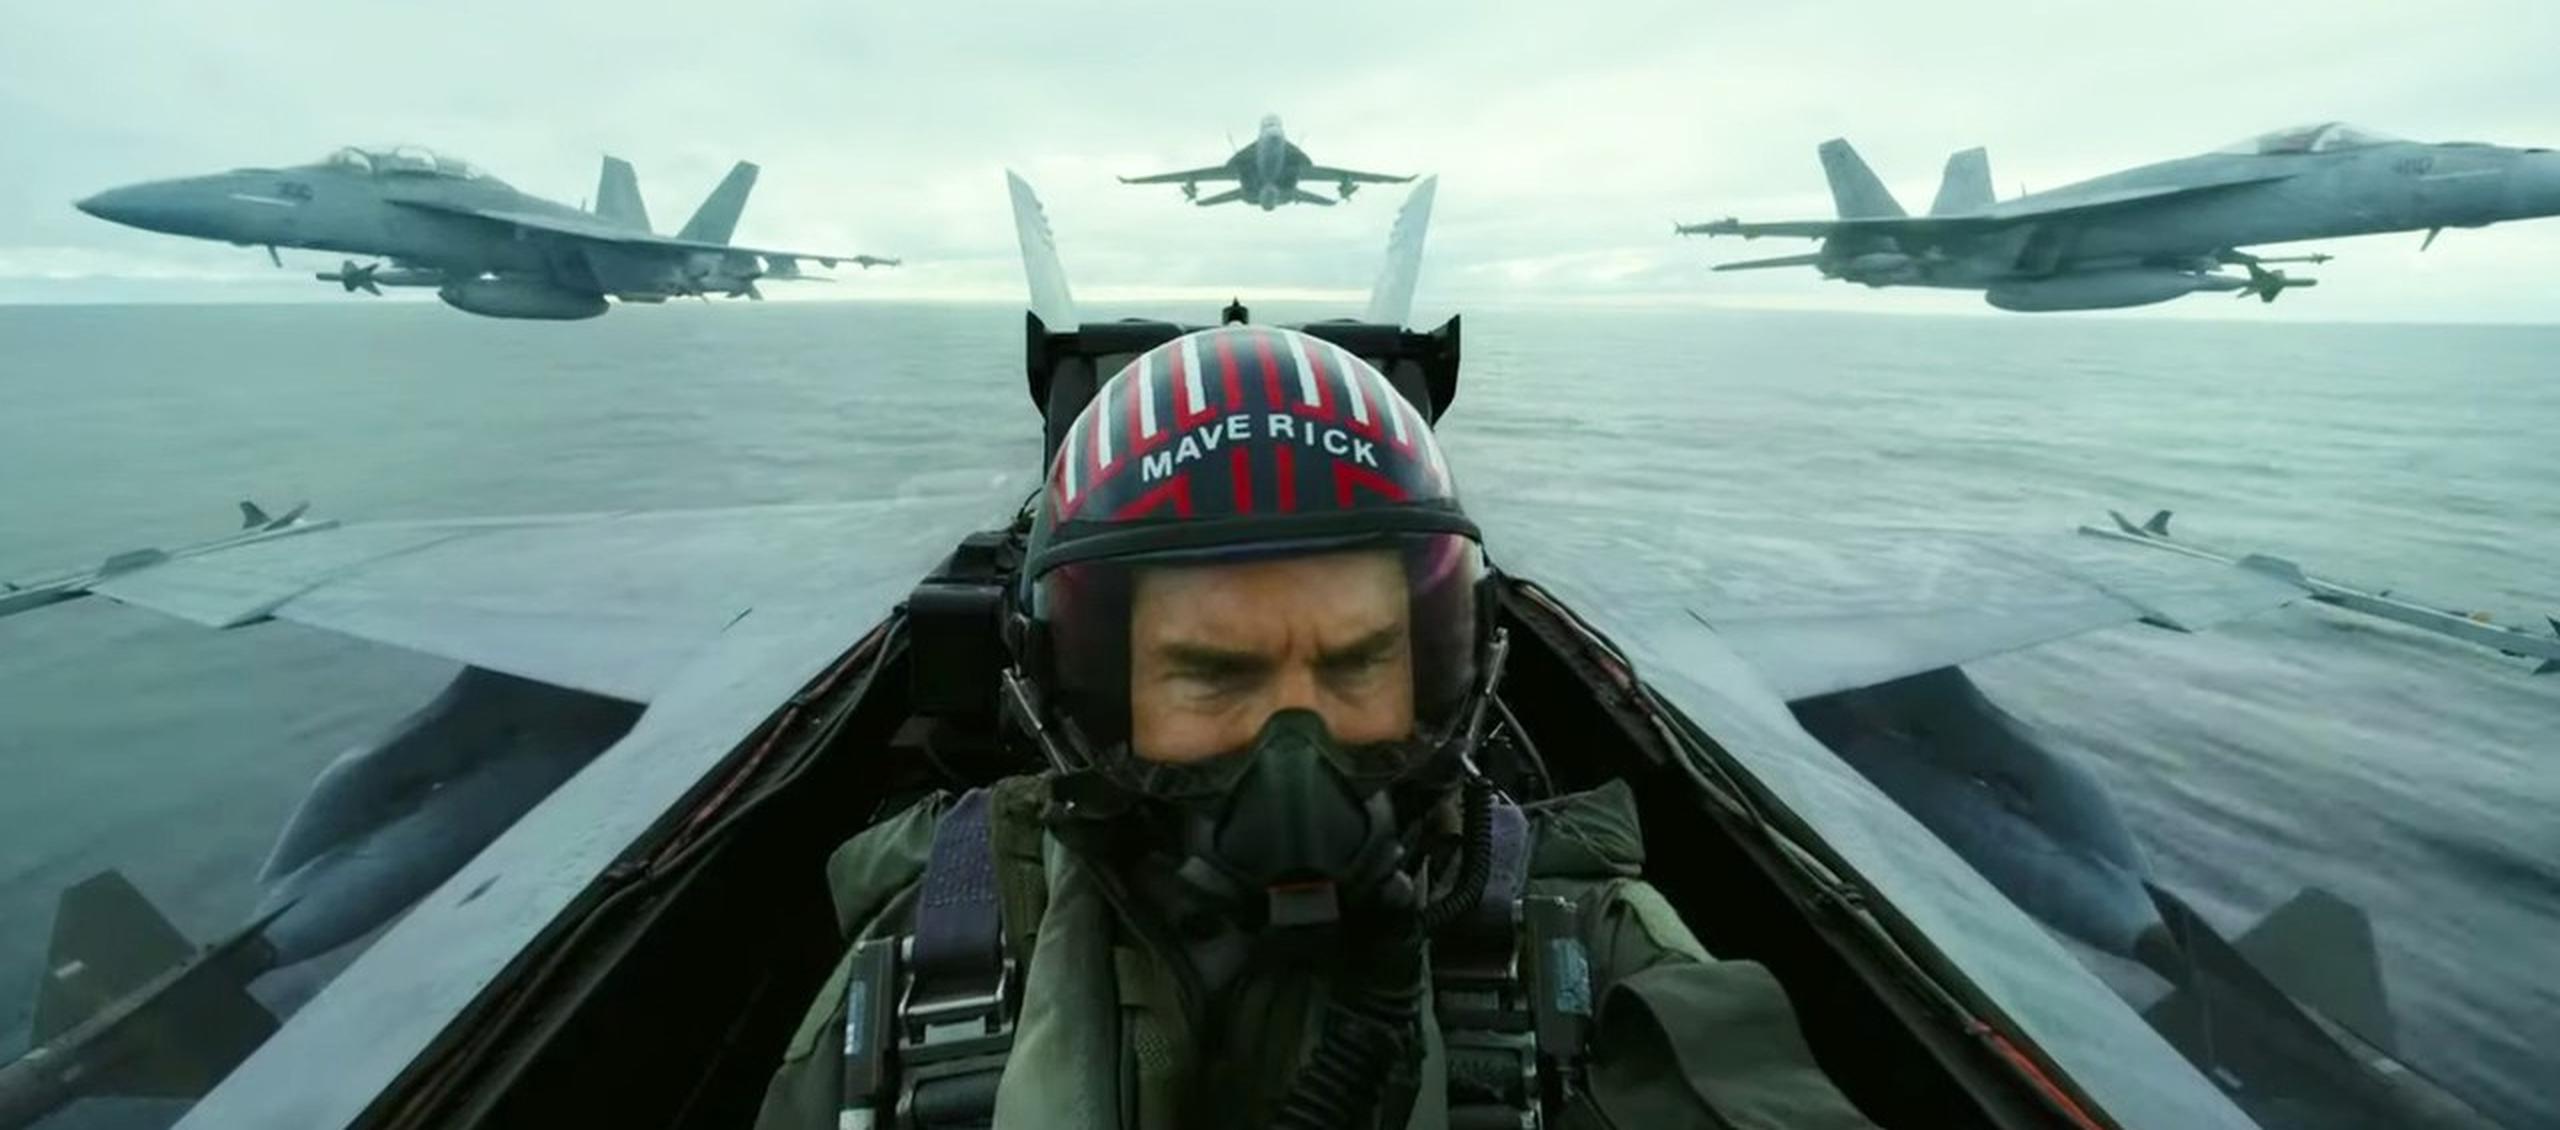 El actor Tom Cruise protagonizará la secuela "Top Gun: Maverick", que estrenará en noviembre de 2021.